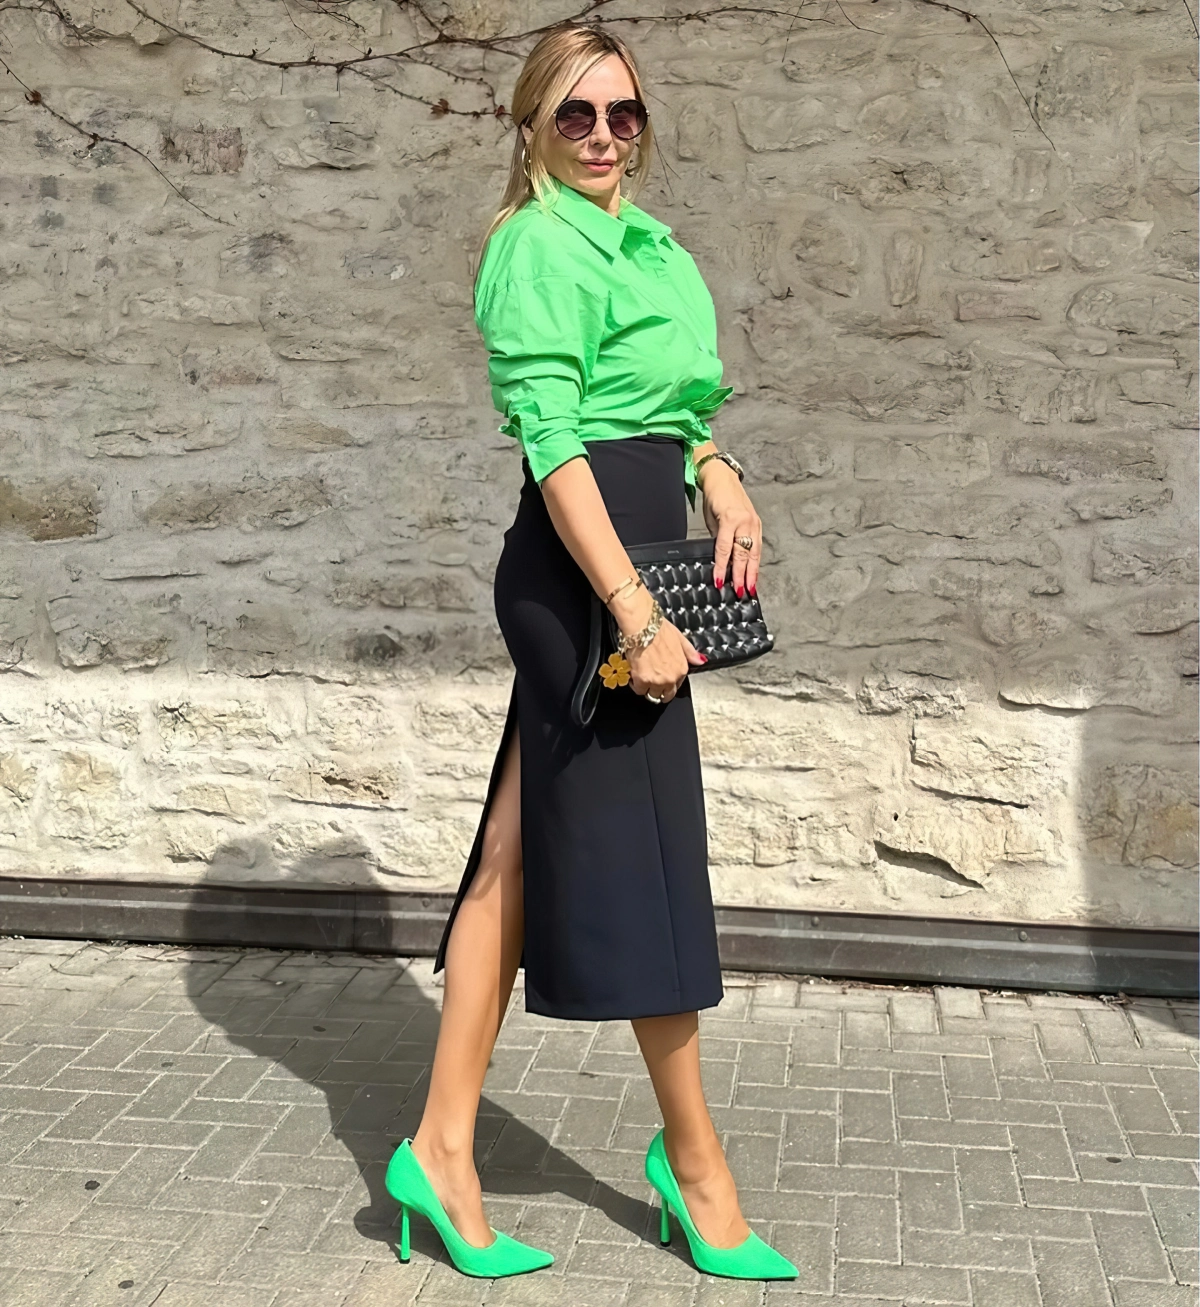 jupe noire droite fendue midi chaussures talons vert neon chemise